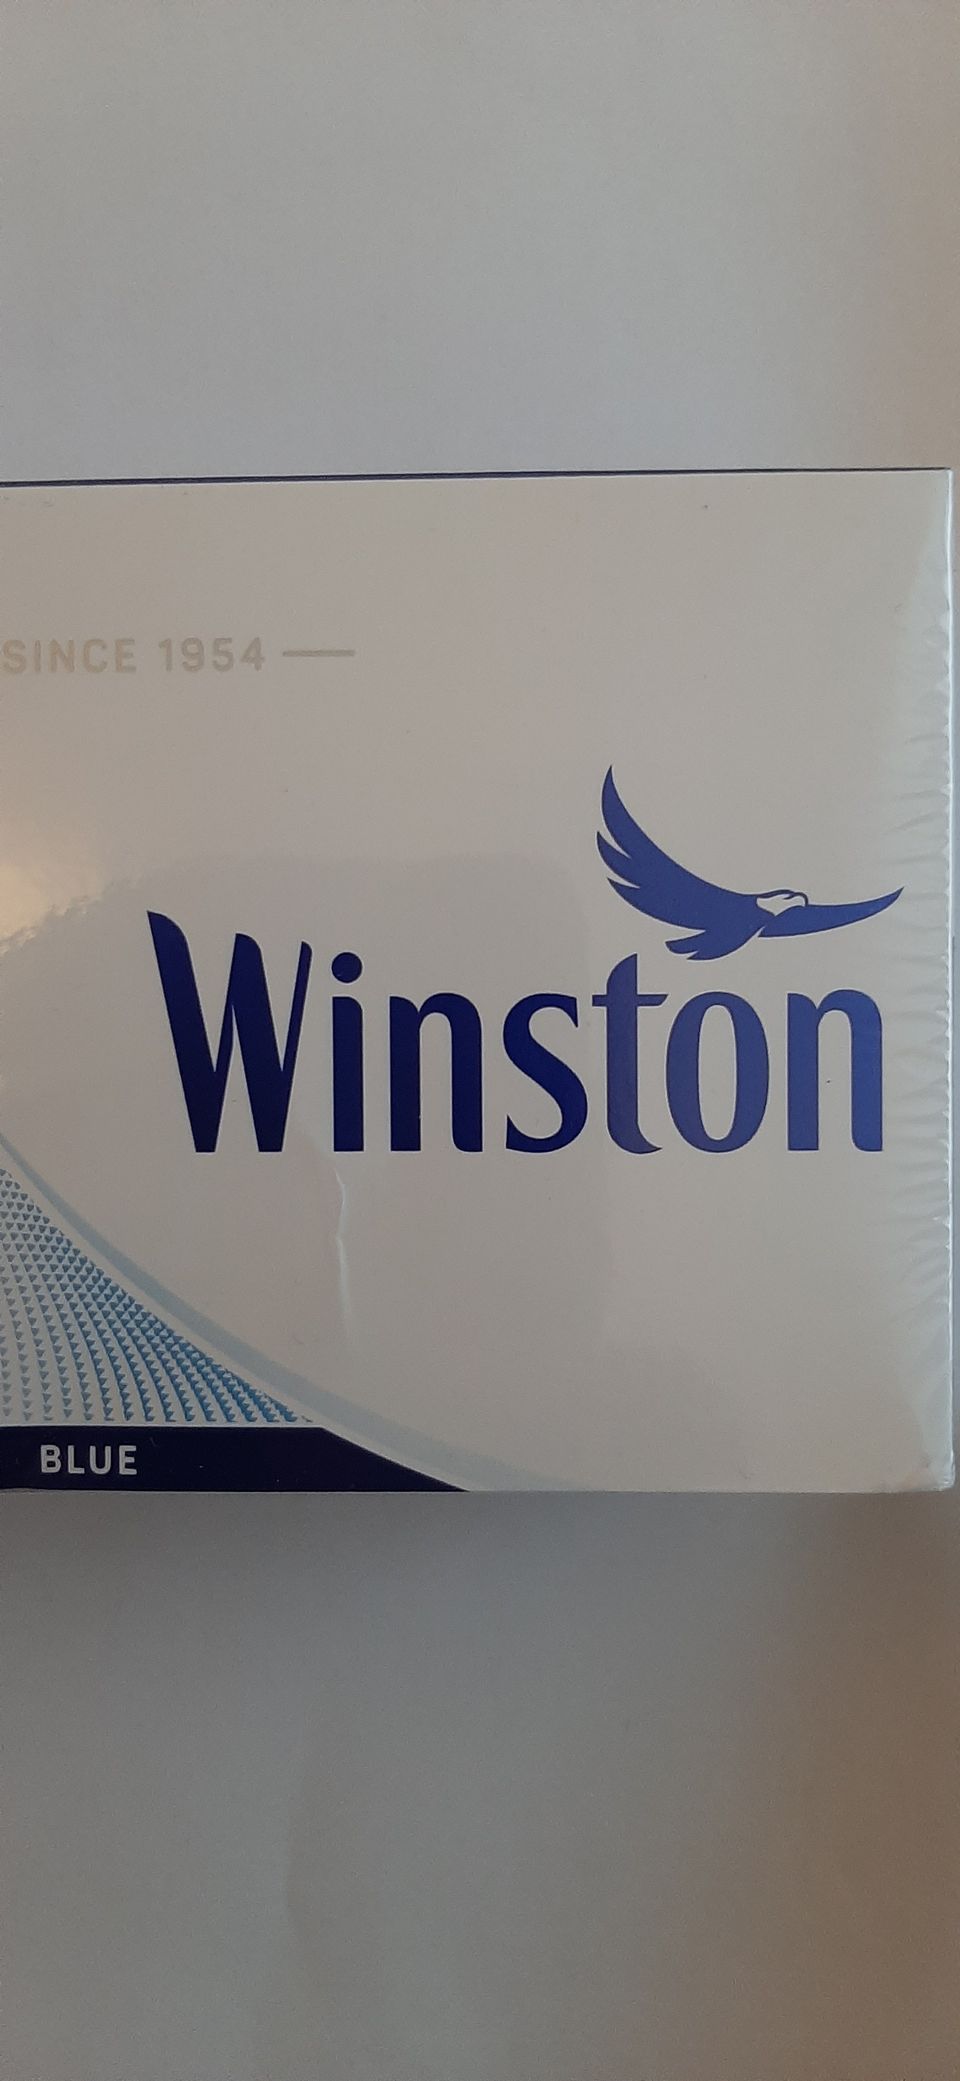 Winston blue kartonki